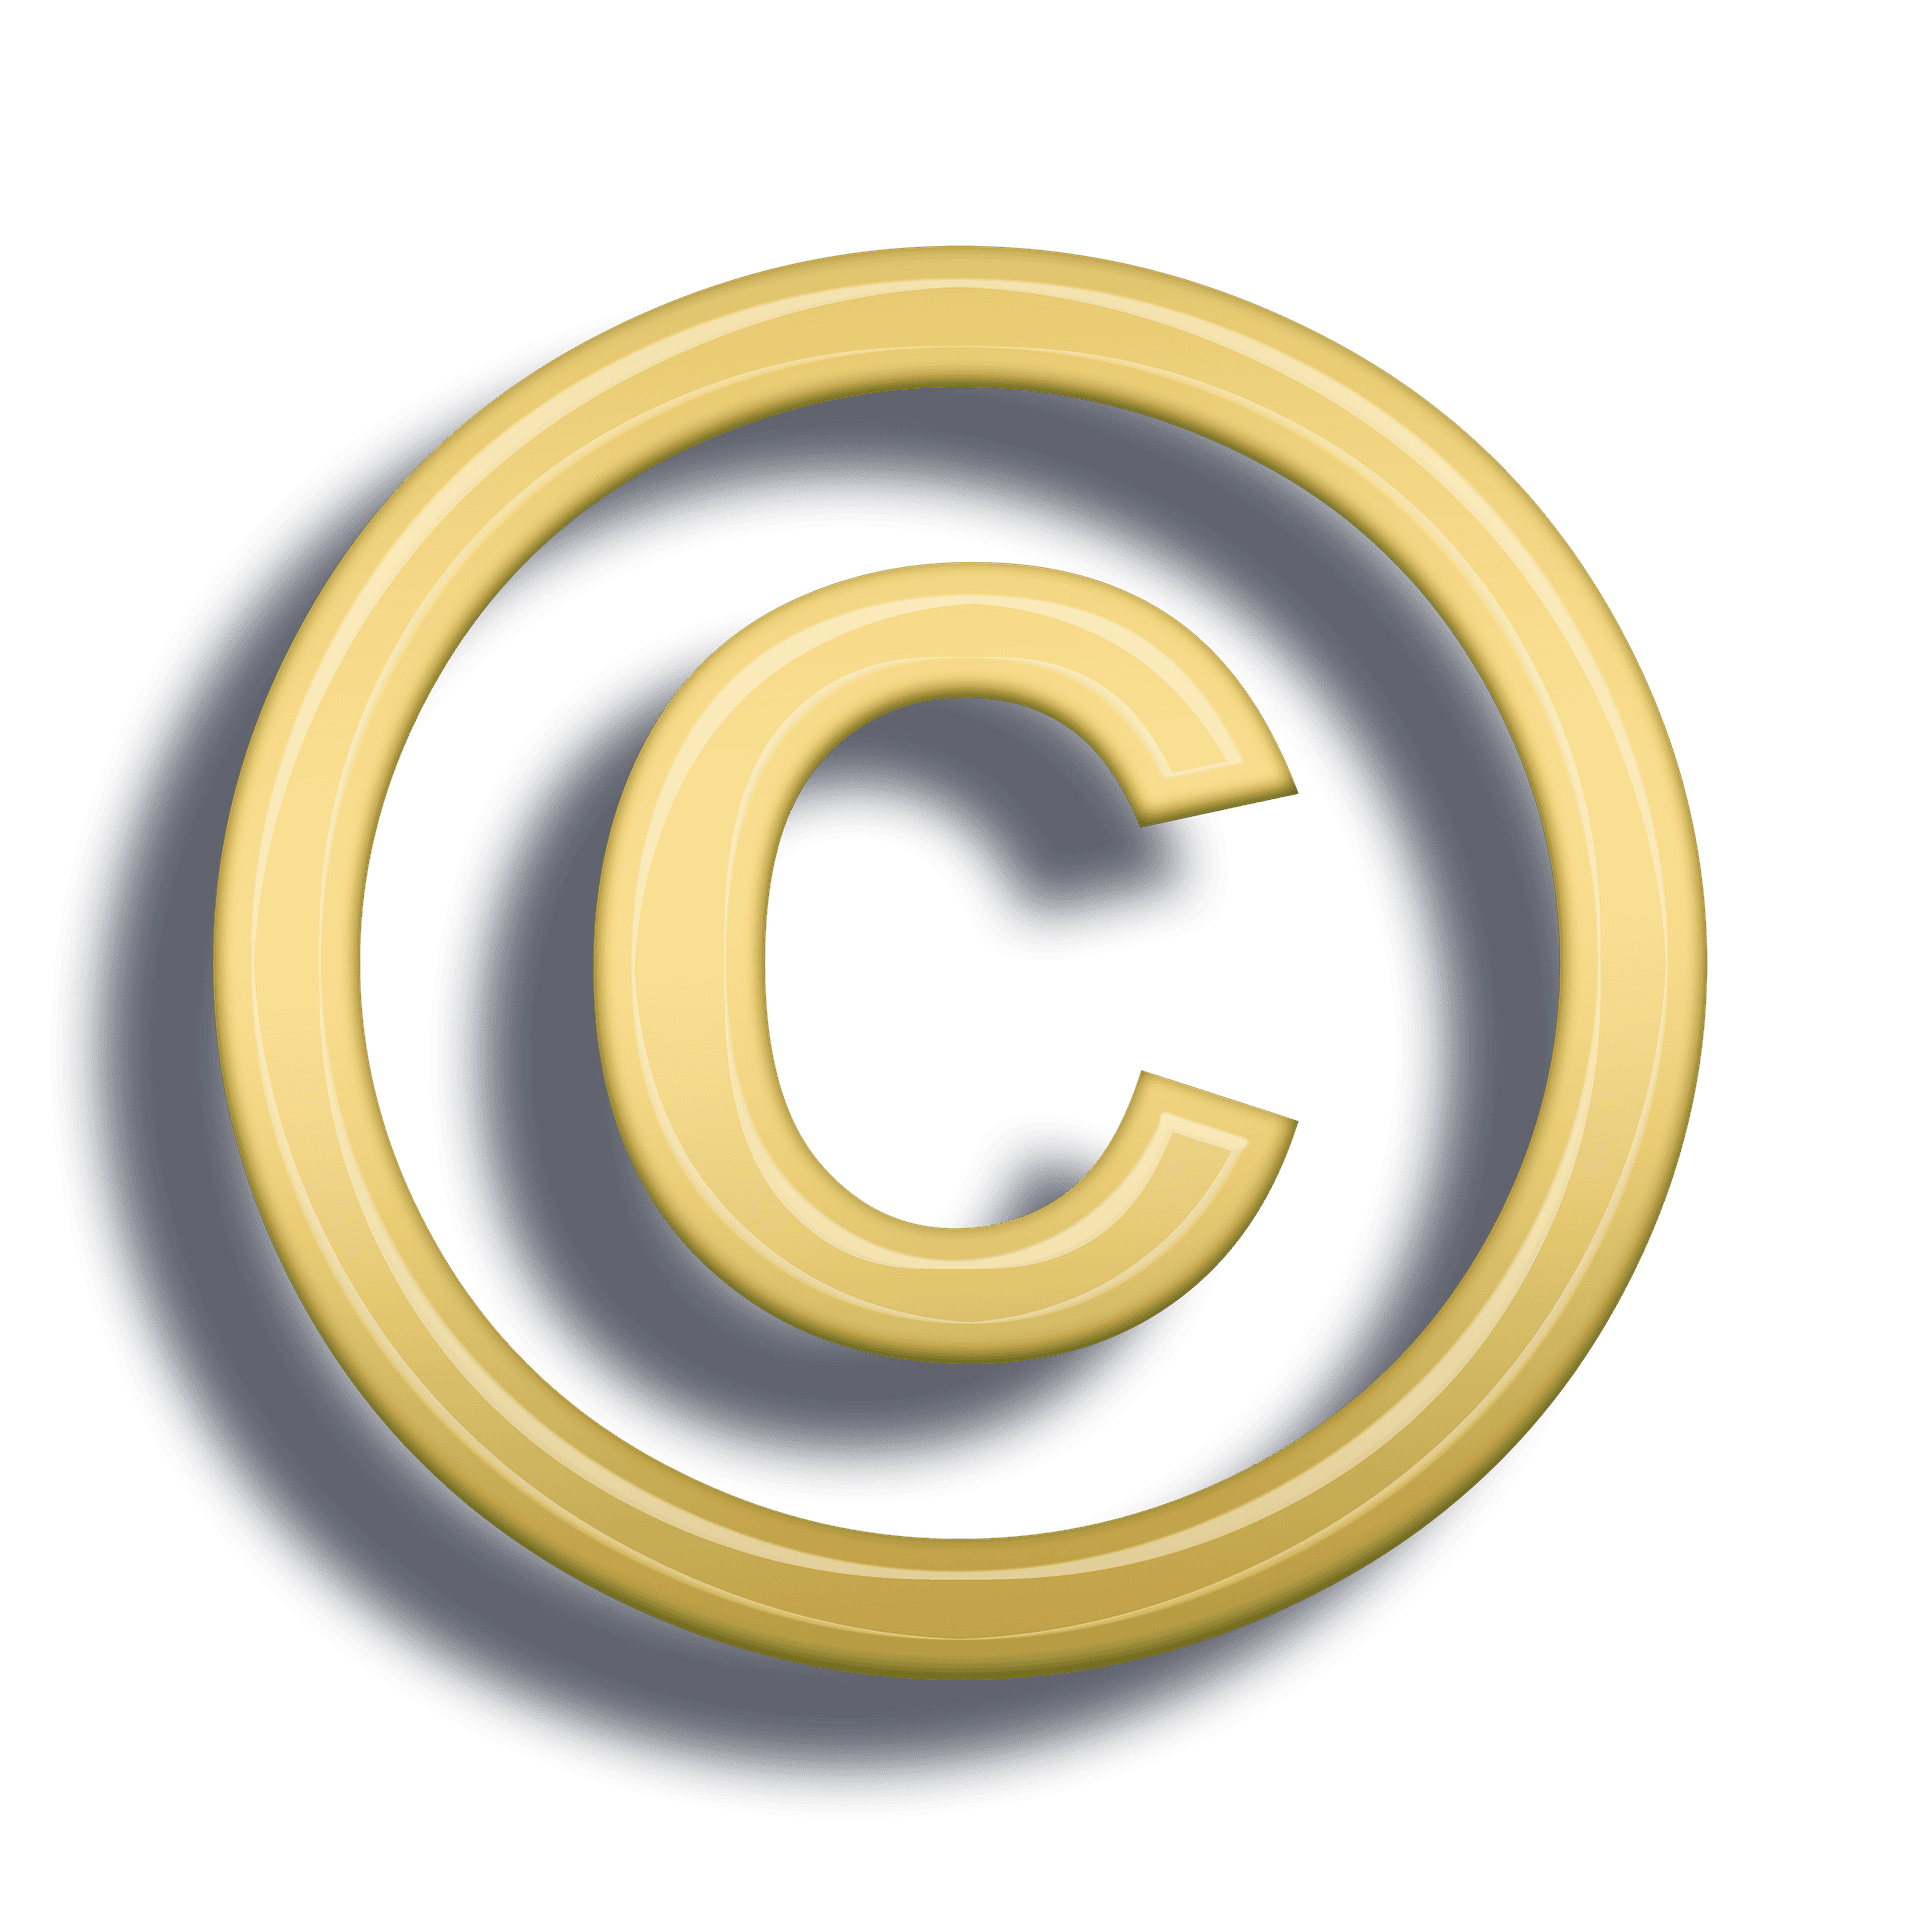 Значок копирайта. Значок защиты авторских прав. Авторское право иконка